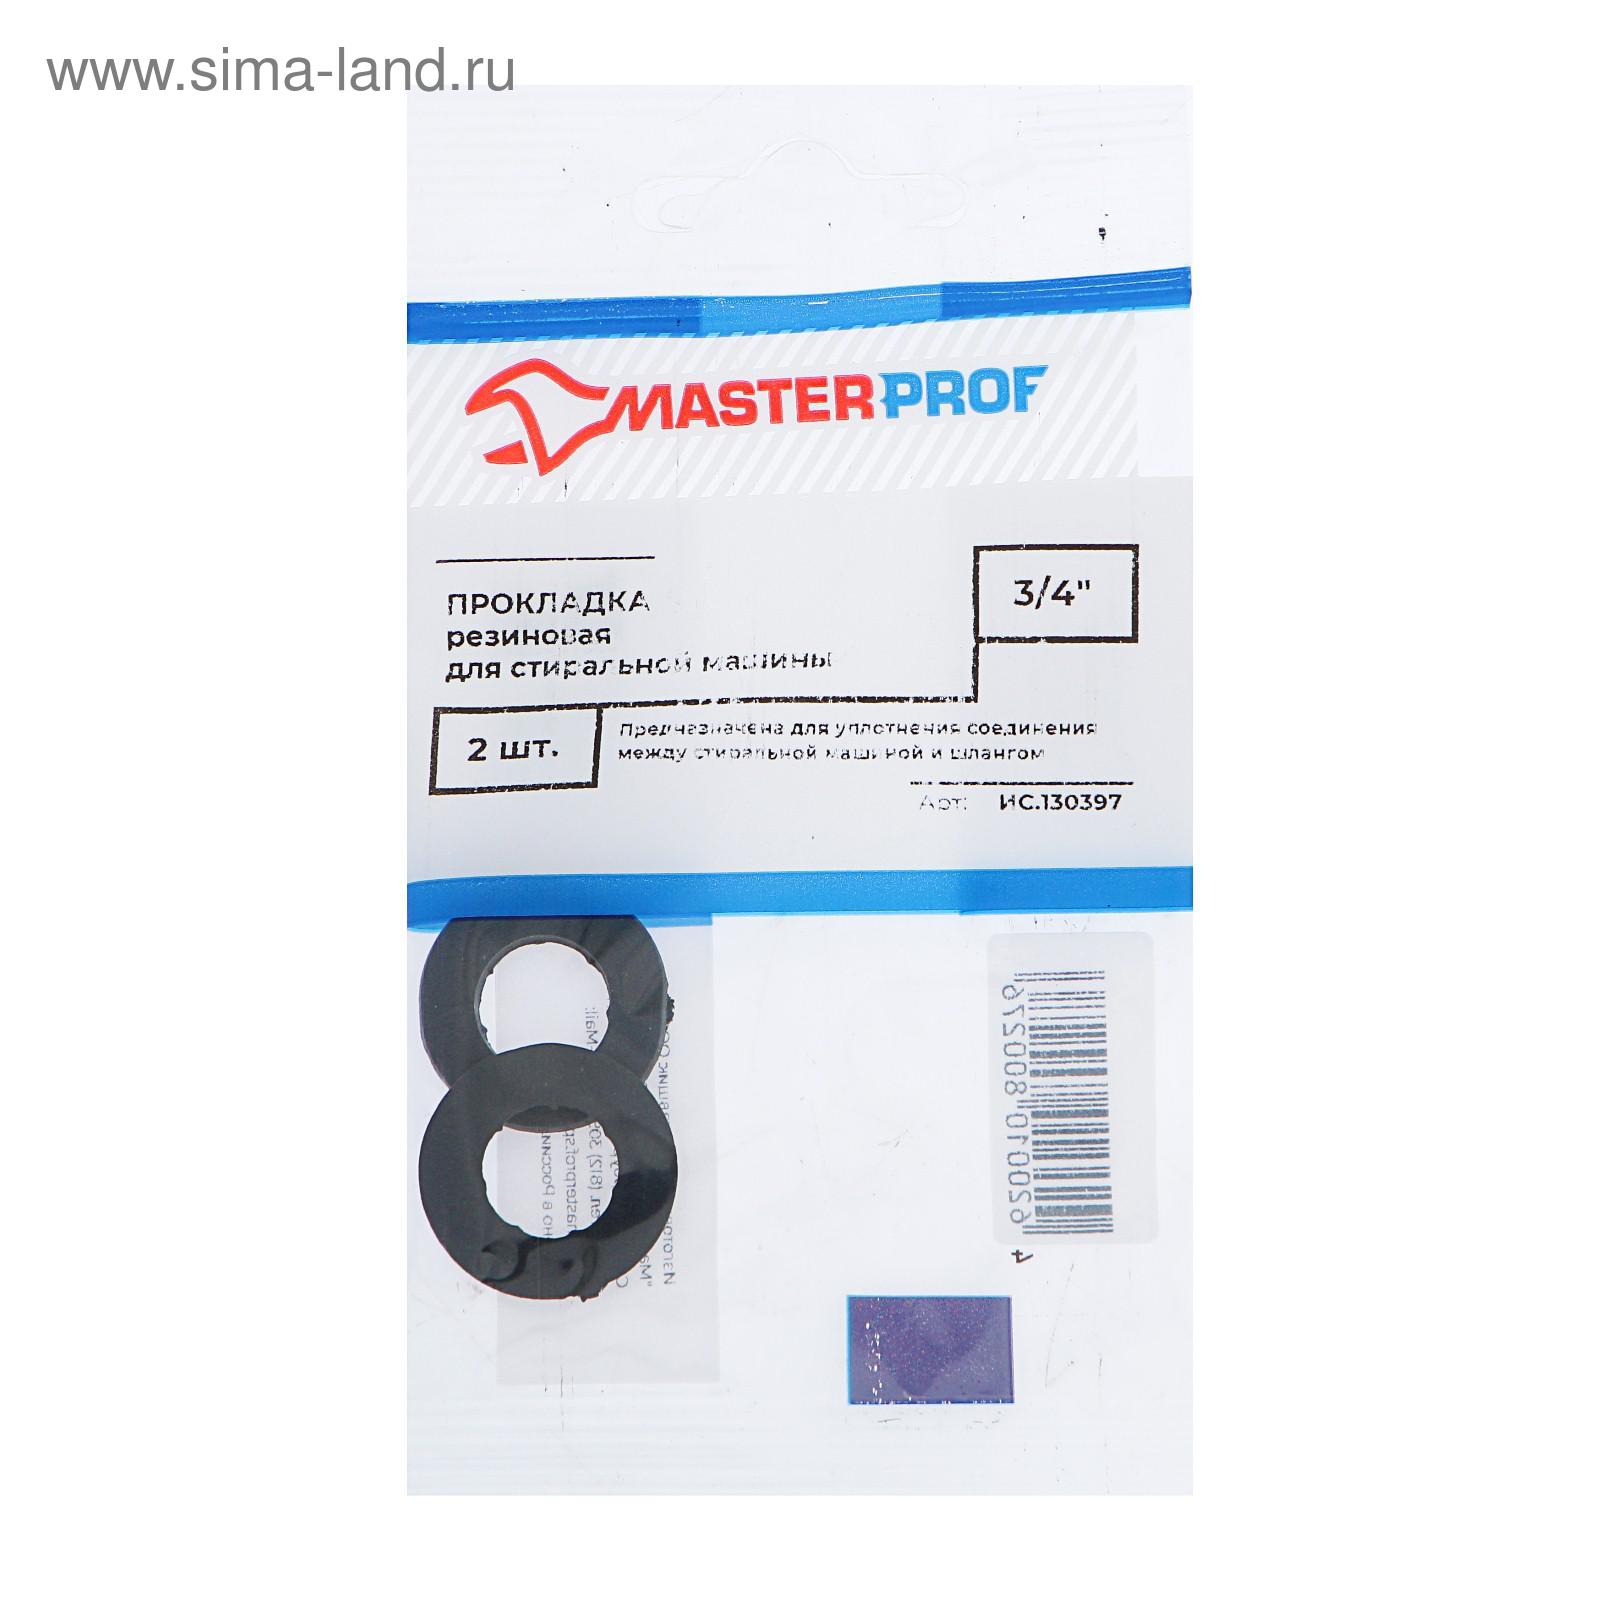 Прокладка резиновая Masterprof ИС.130397, для стиральной машины 3/4 .